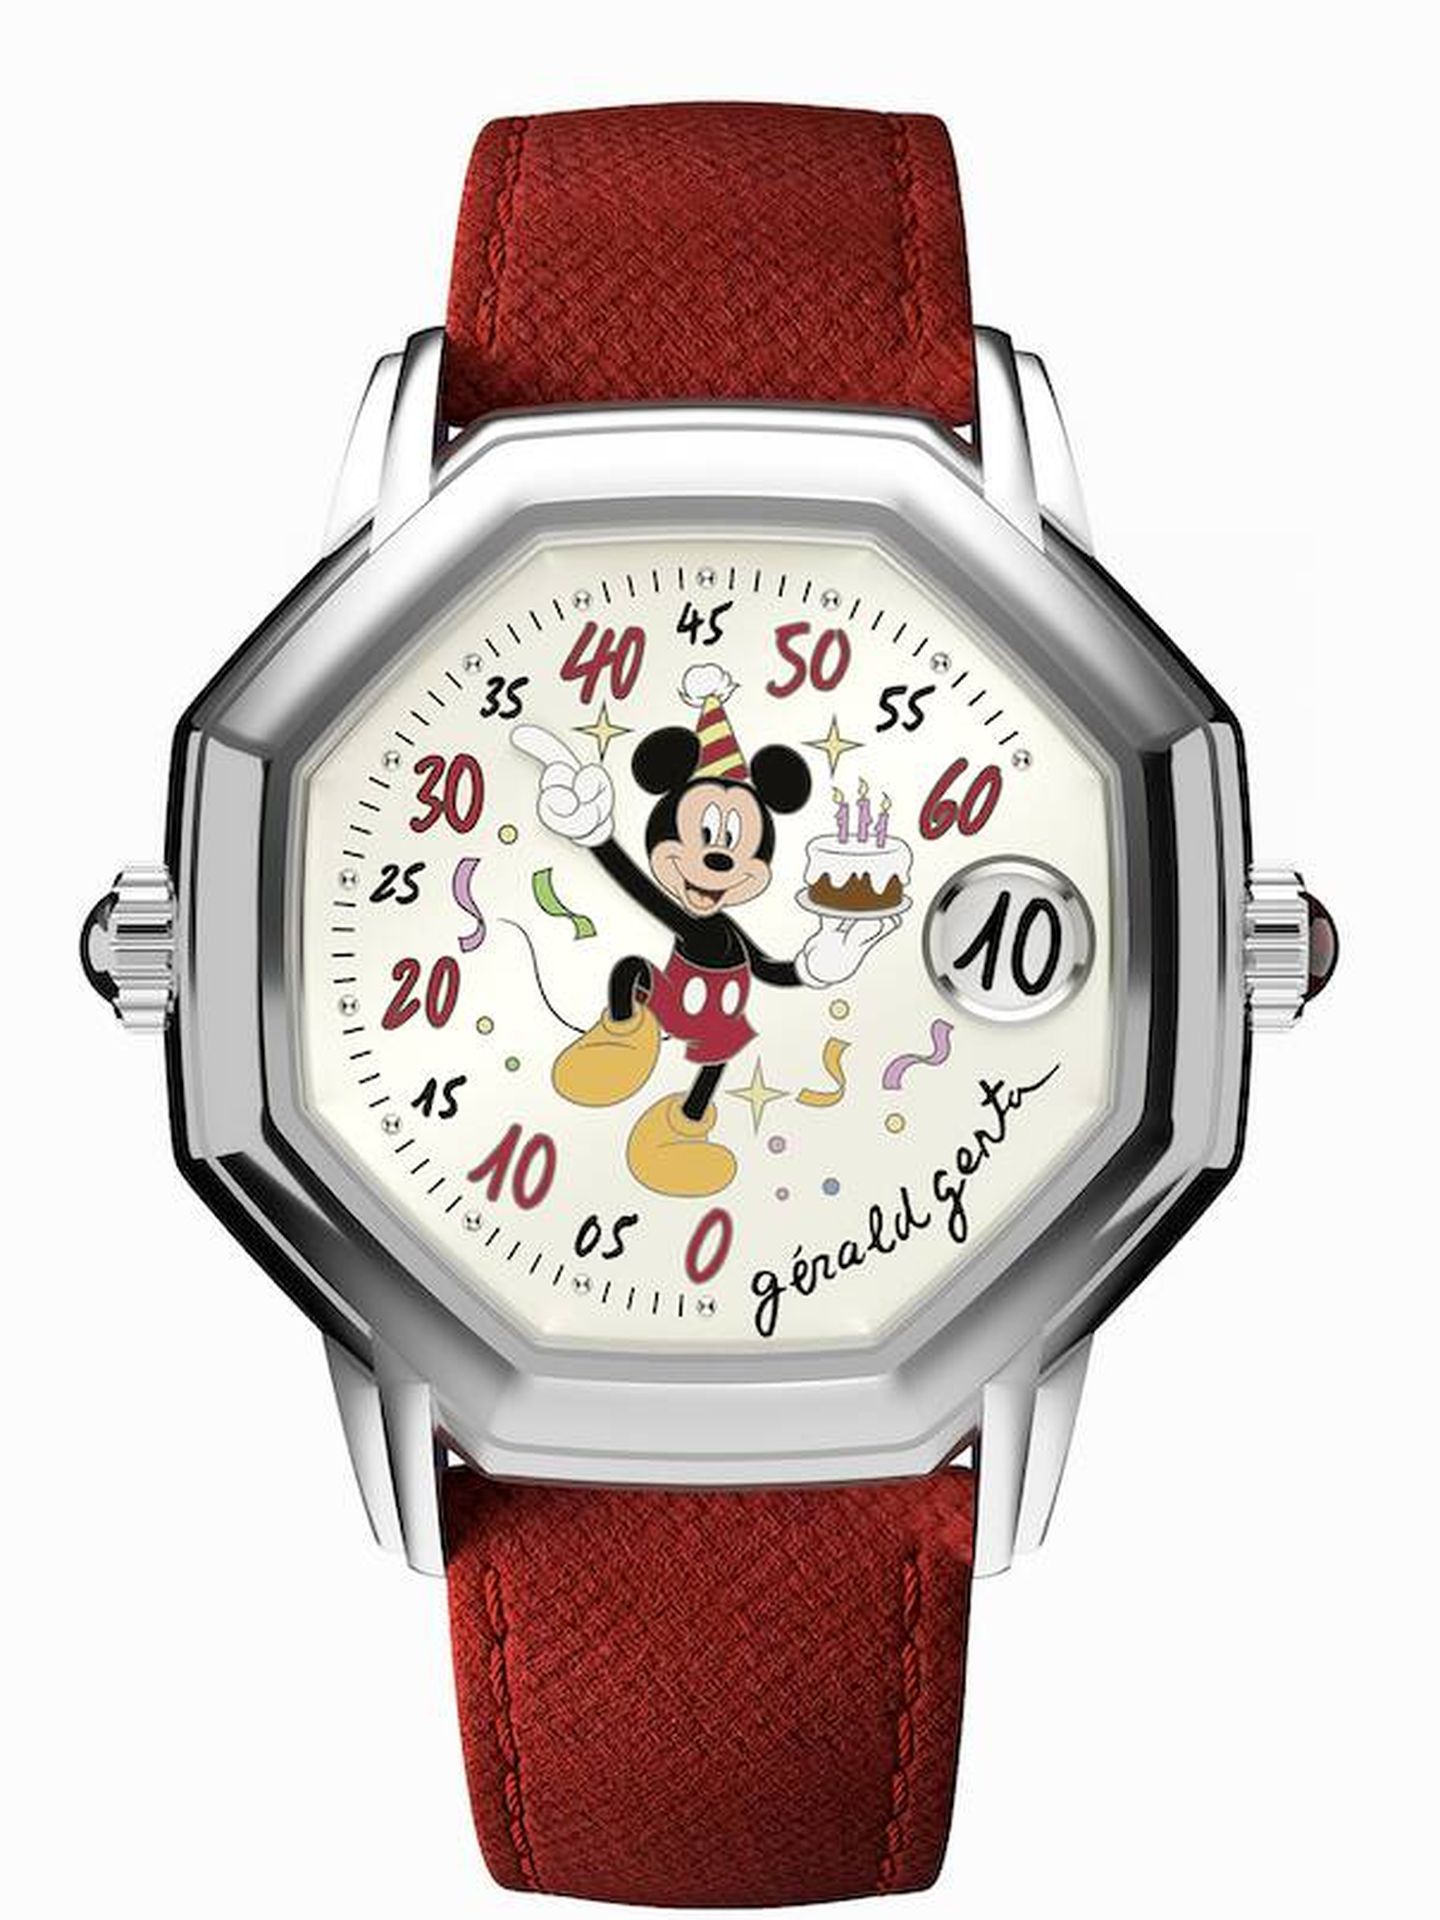 El brazo giratorio de Mickey Mouse apunta a los minutos retrógrados. (Cortesía)